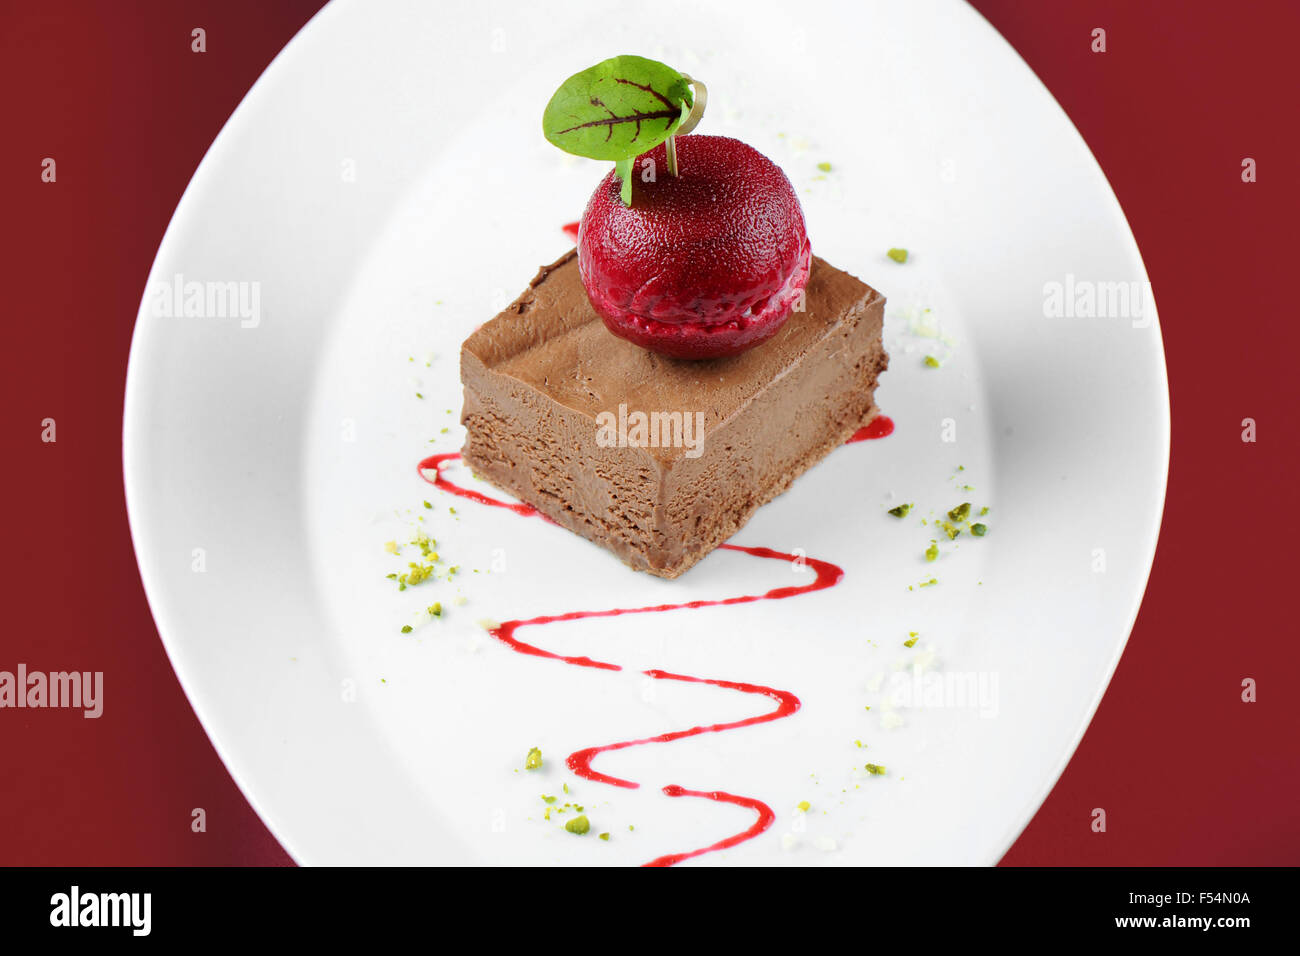 Gourmet-Schokolade Maus-Eis-Dessert mit einem dunklen Kirsche Sorbet. Stockfoto